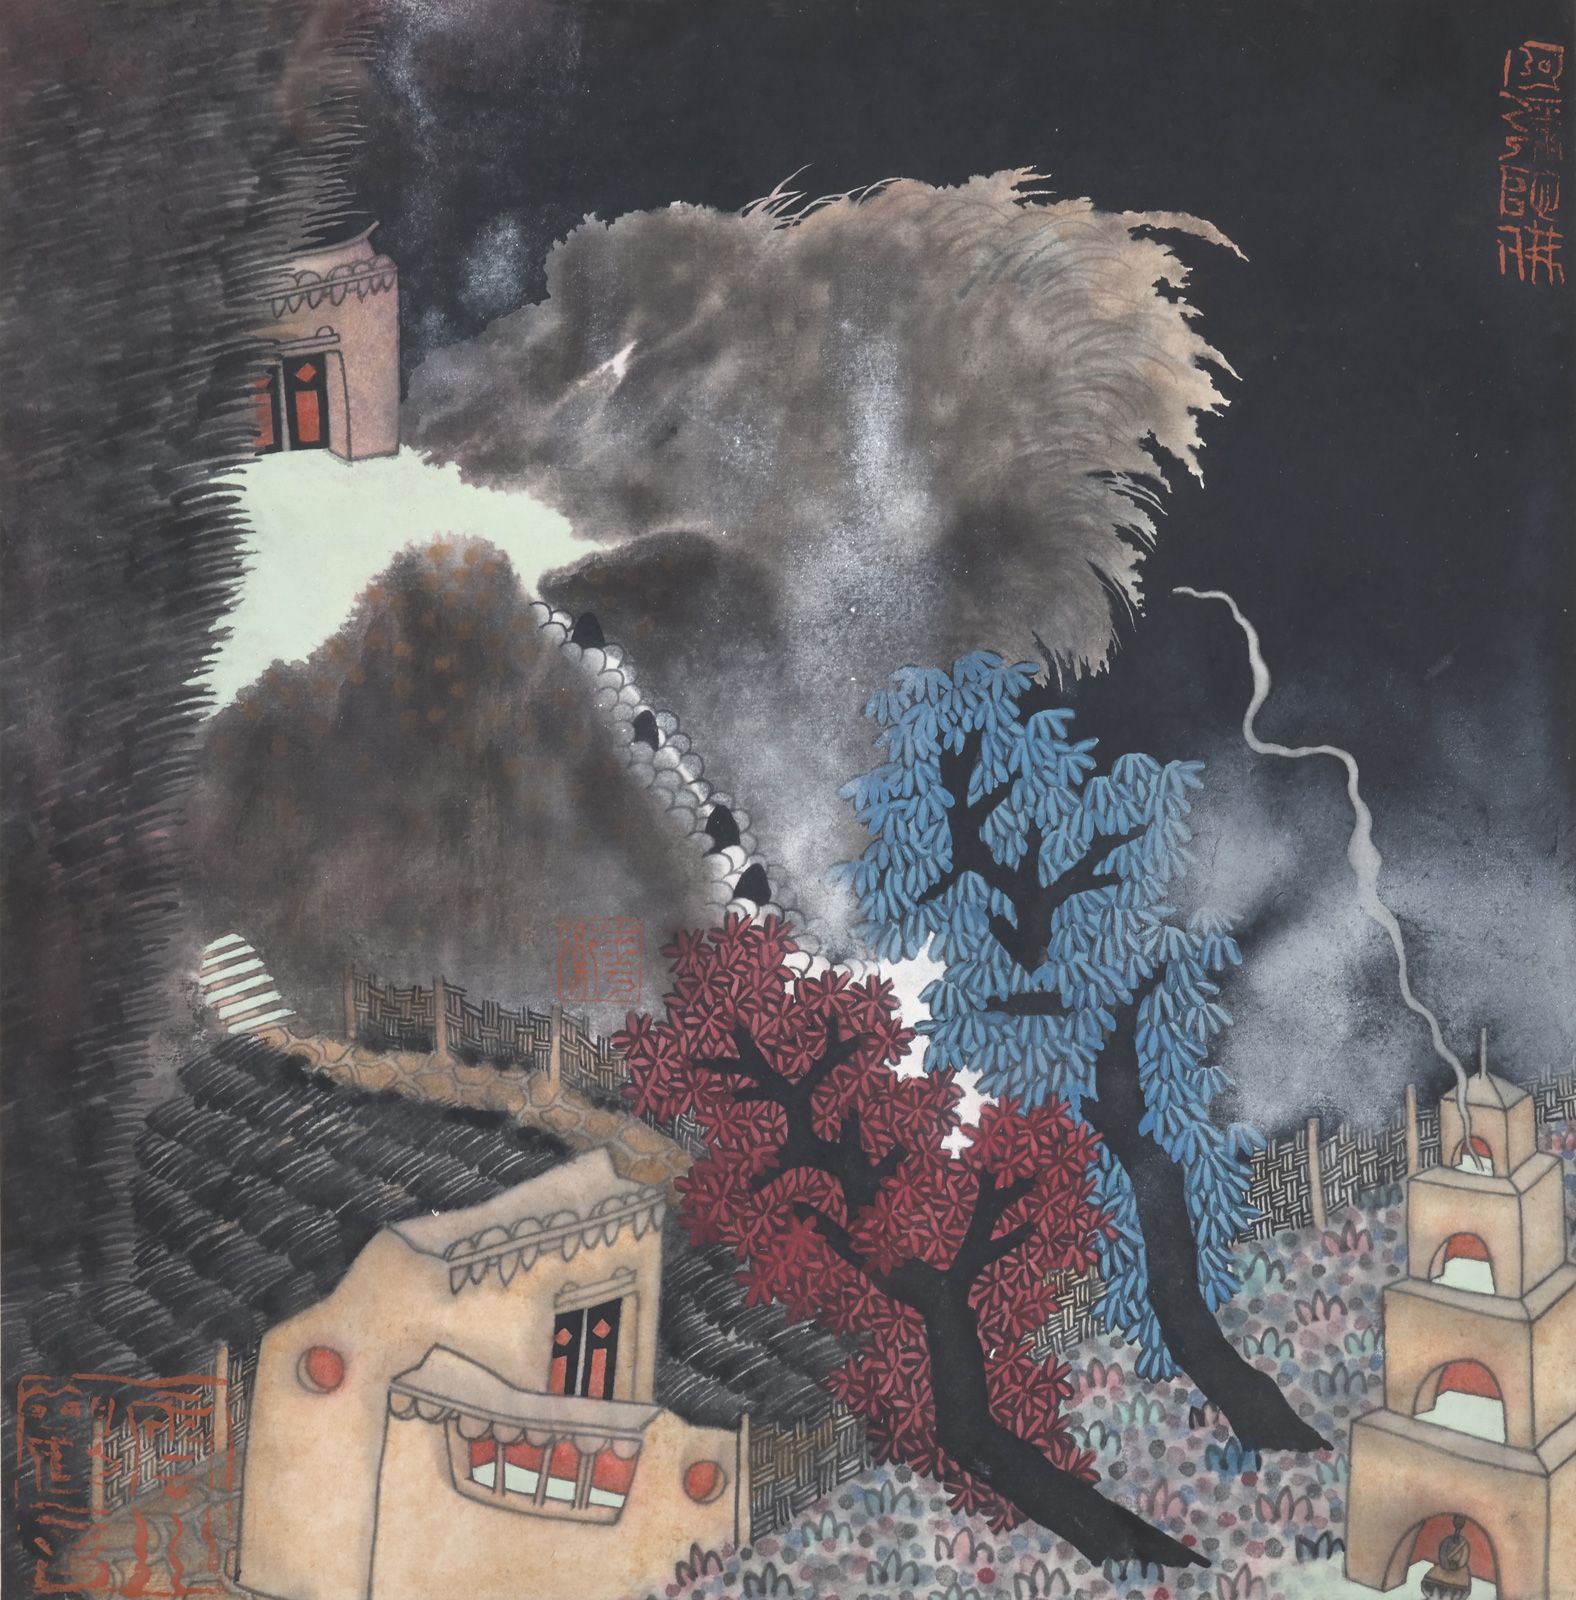 GUO Huawei (1983) 两棵圣树，2012年
宣纸上的水墨和丙烯，左下角盖有艺术家的印章
40 x 40 cm。